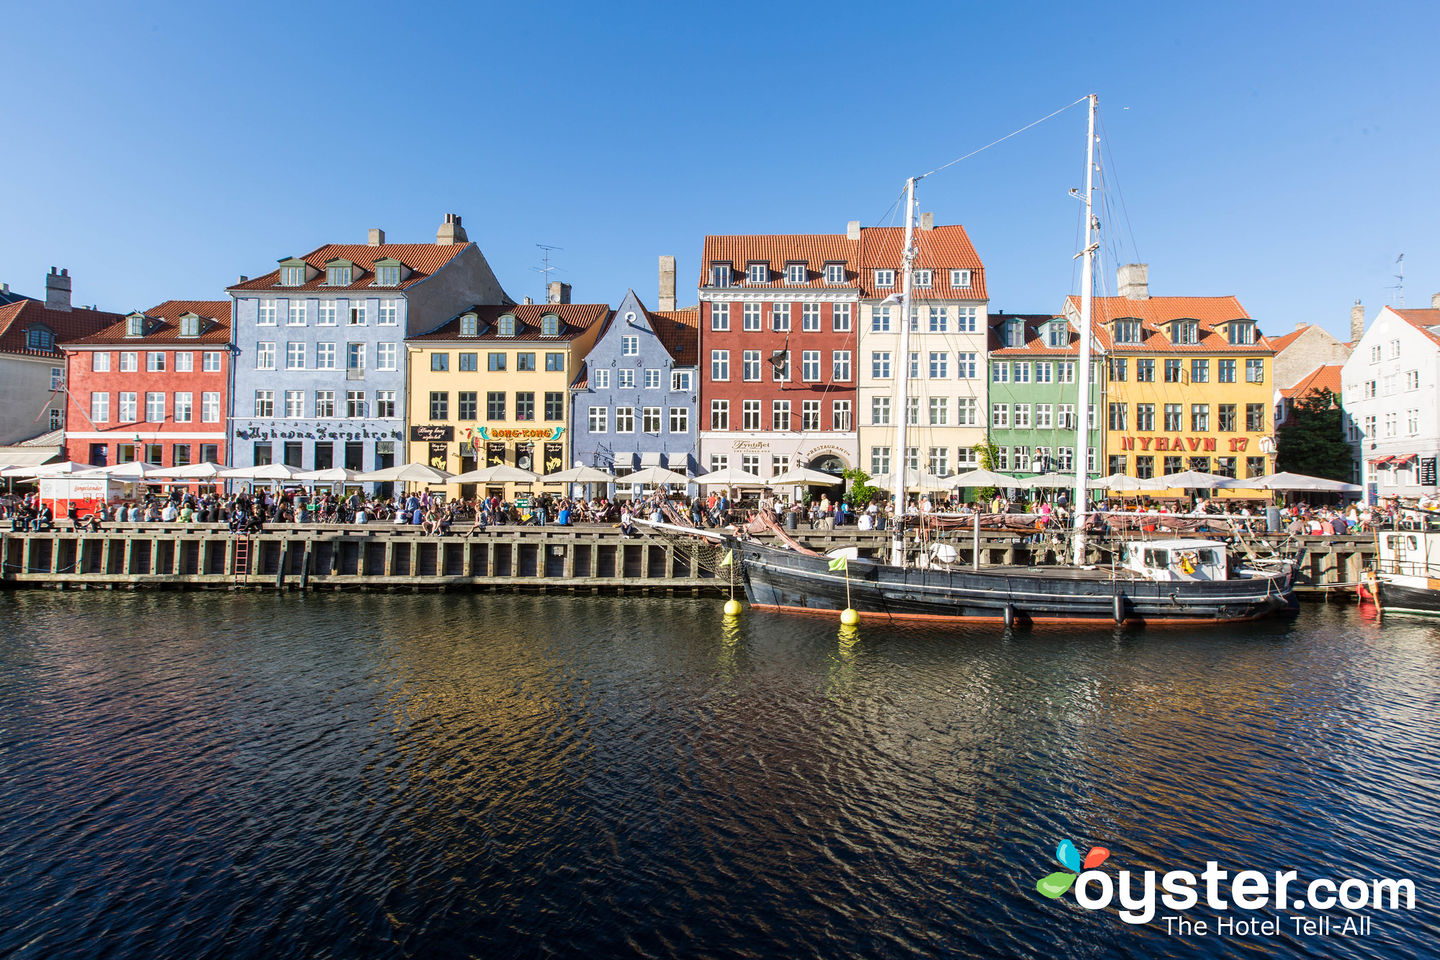 Review of Nyhavn Harbor in Copenhagen